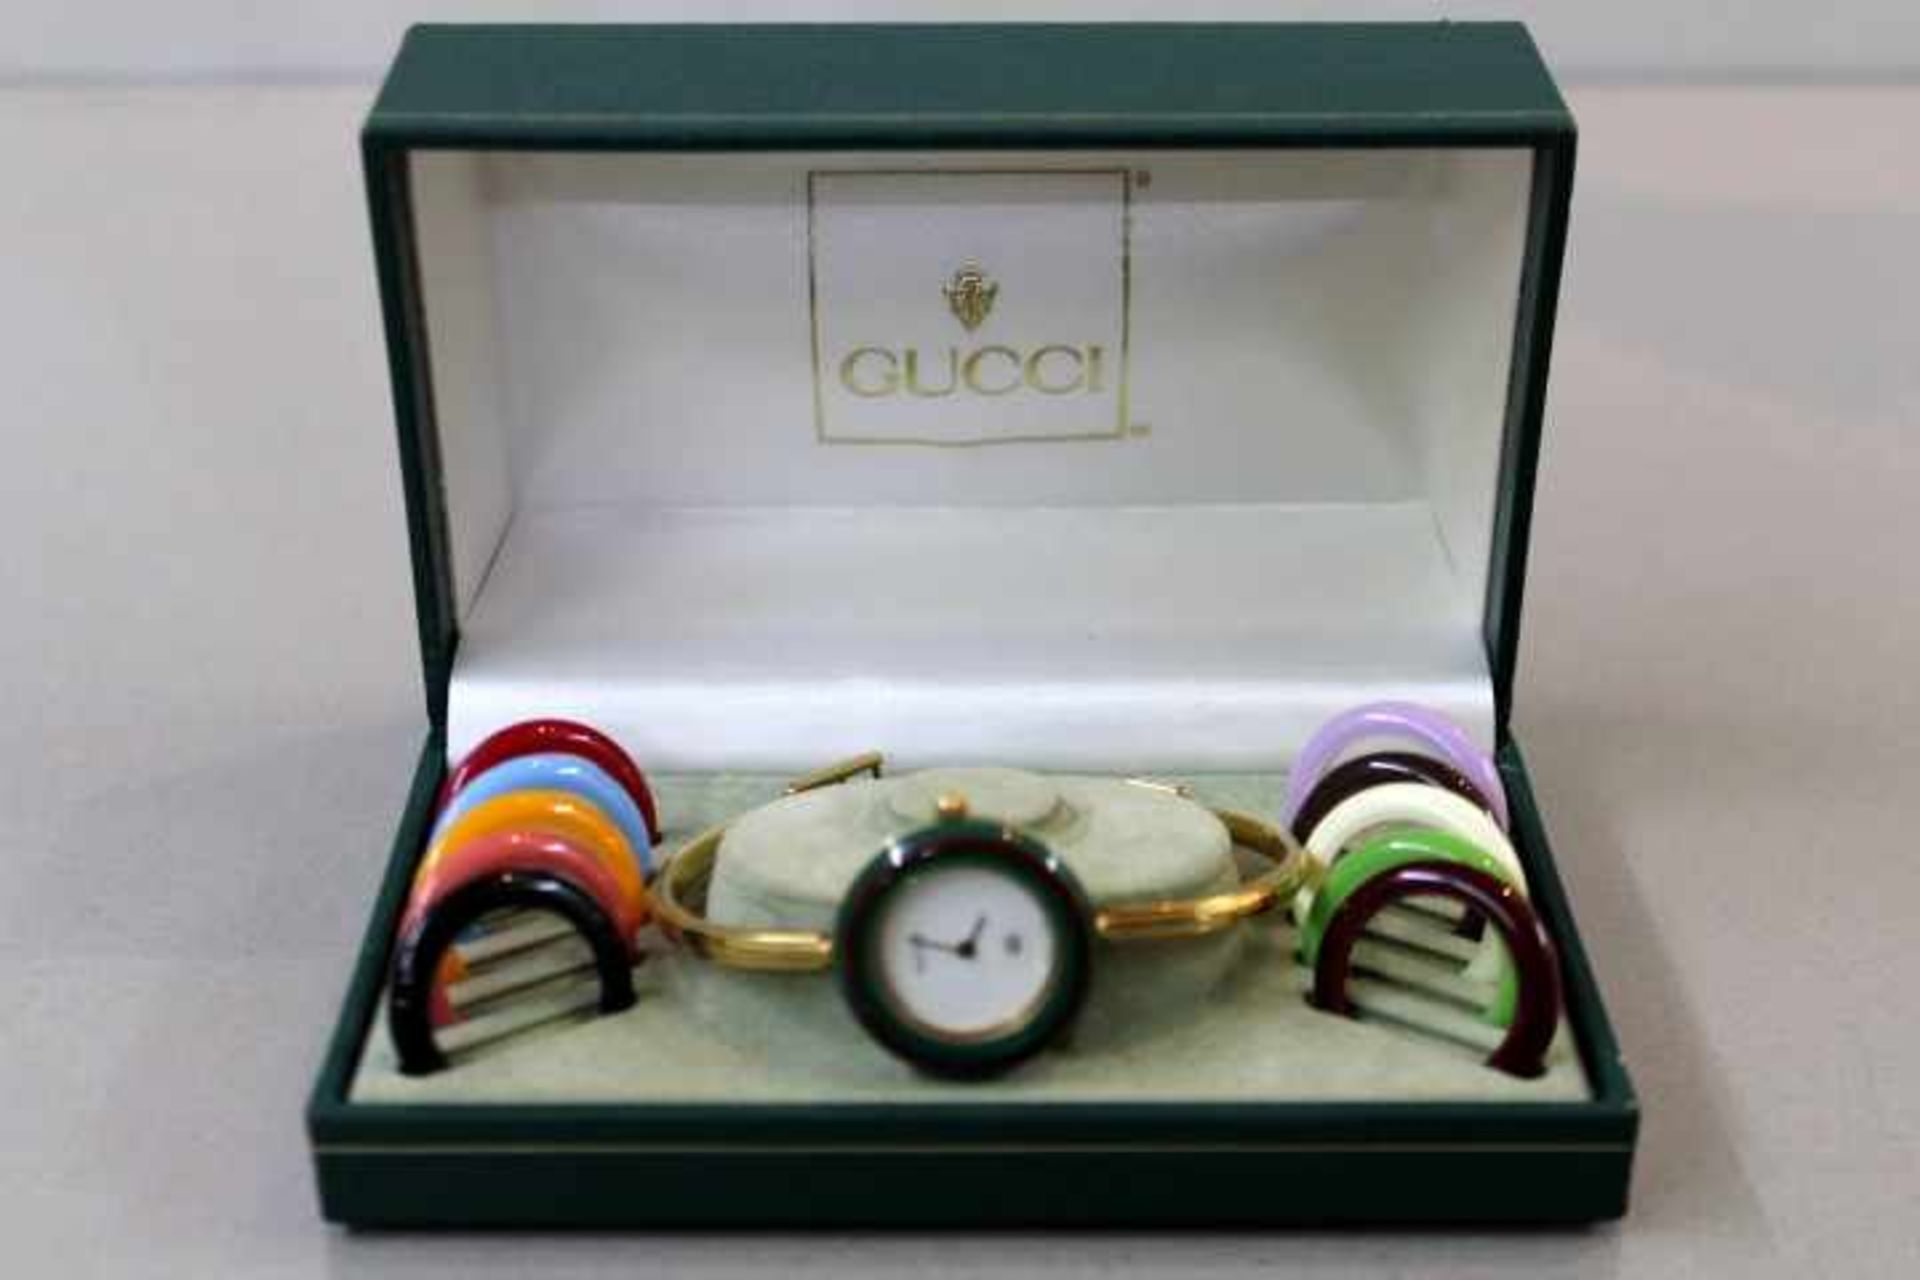 Gucci Damenuhrmit austauschbarer Lünette11 StückAuf dem Verschluss Gucci Logovergoldet --